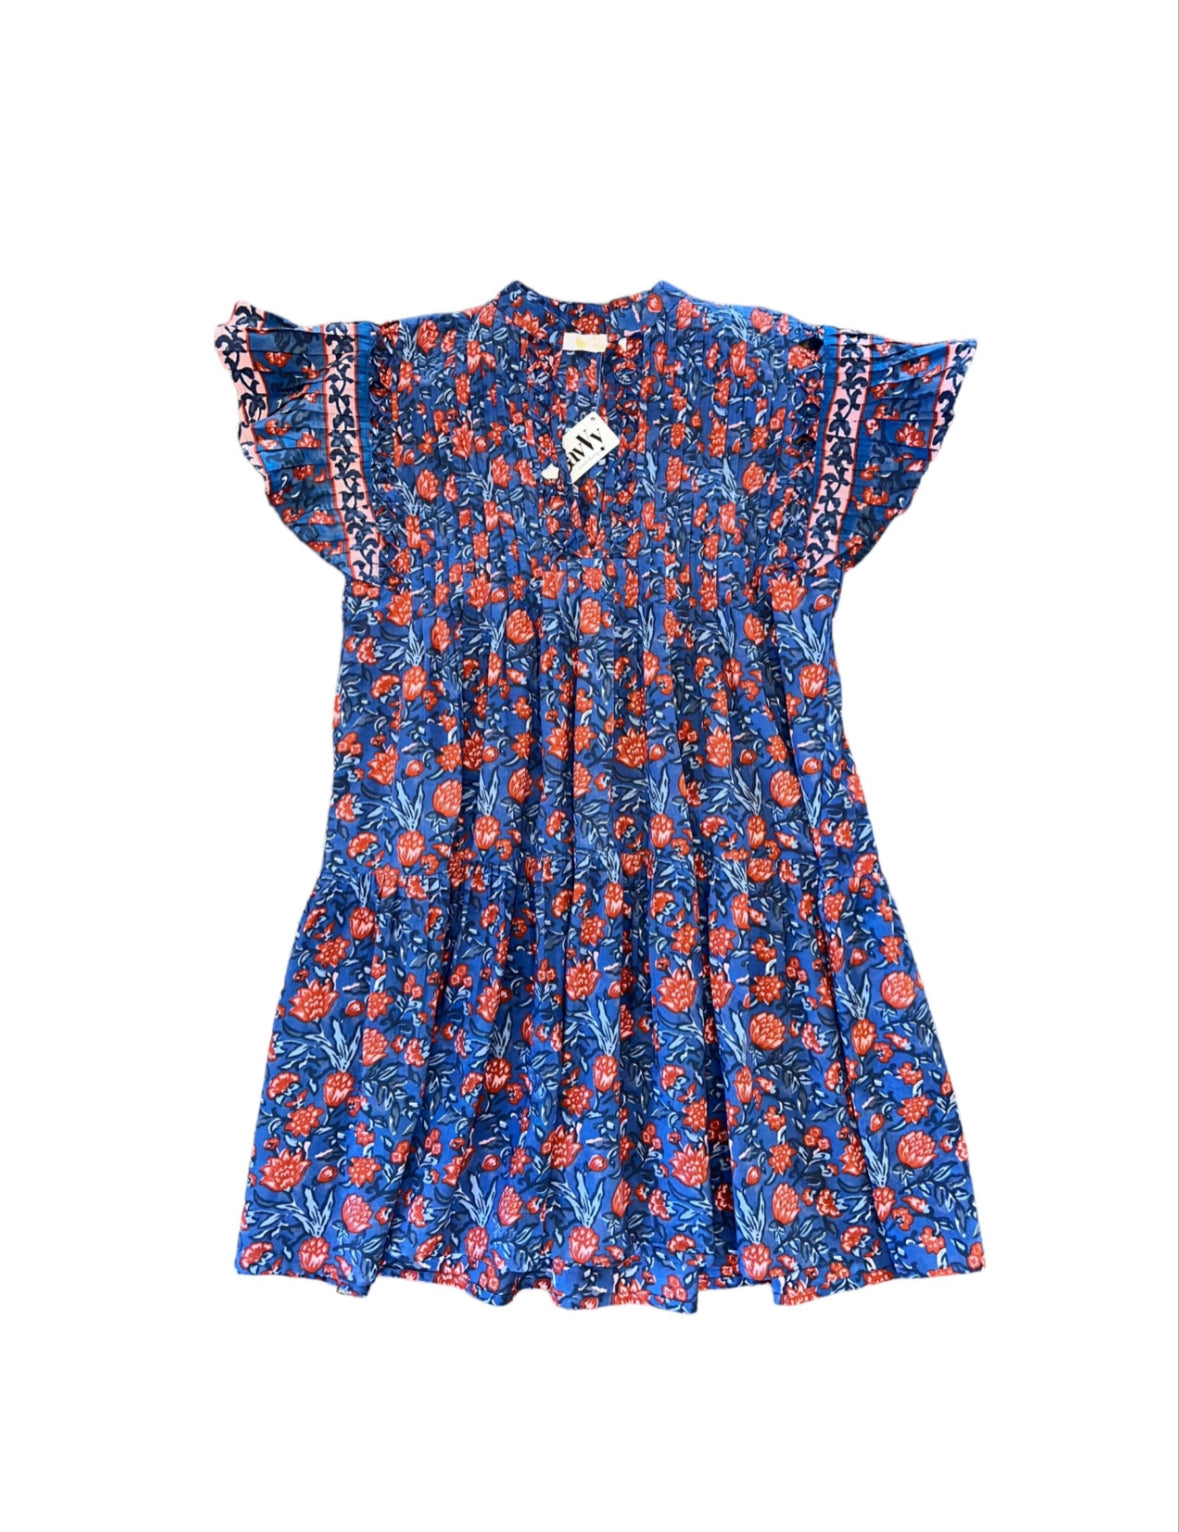 Paola Flowers Printed Dress in blue/coral by Bindu